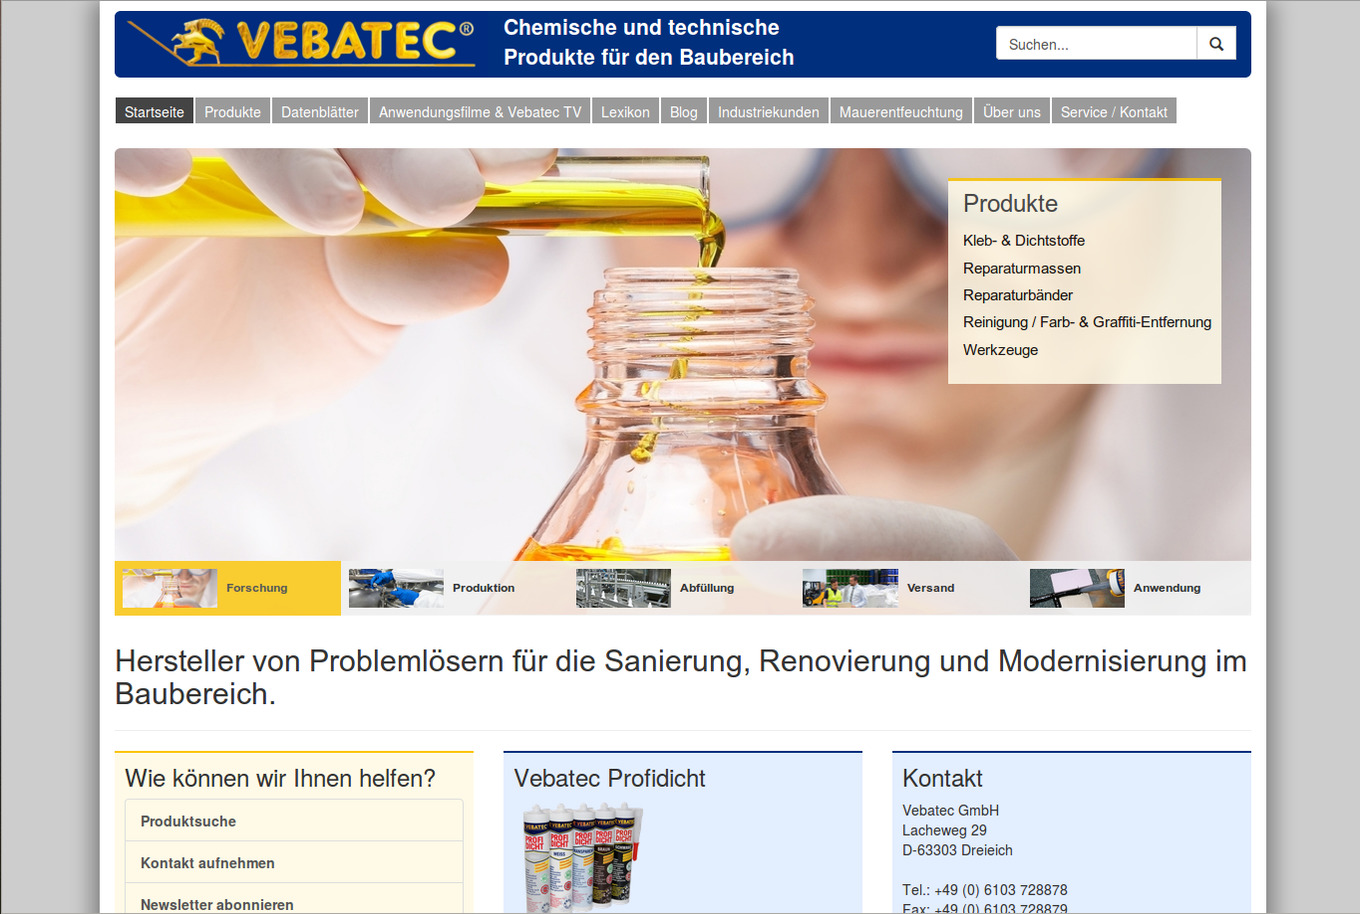 Webseite der Vebatec GmbH: Startseite mit Bildergalerie